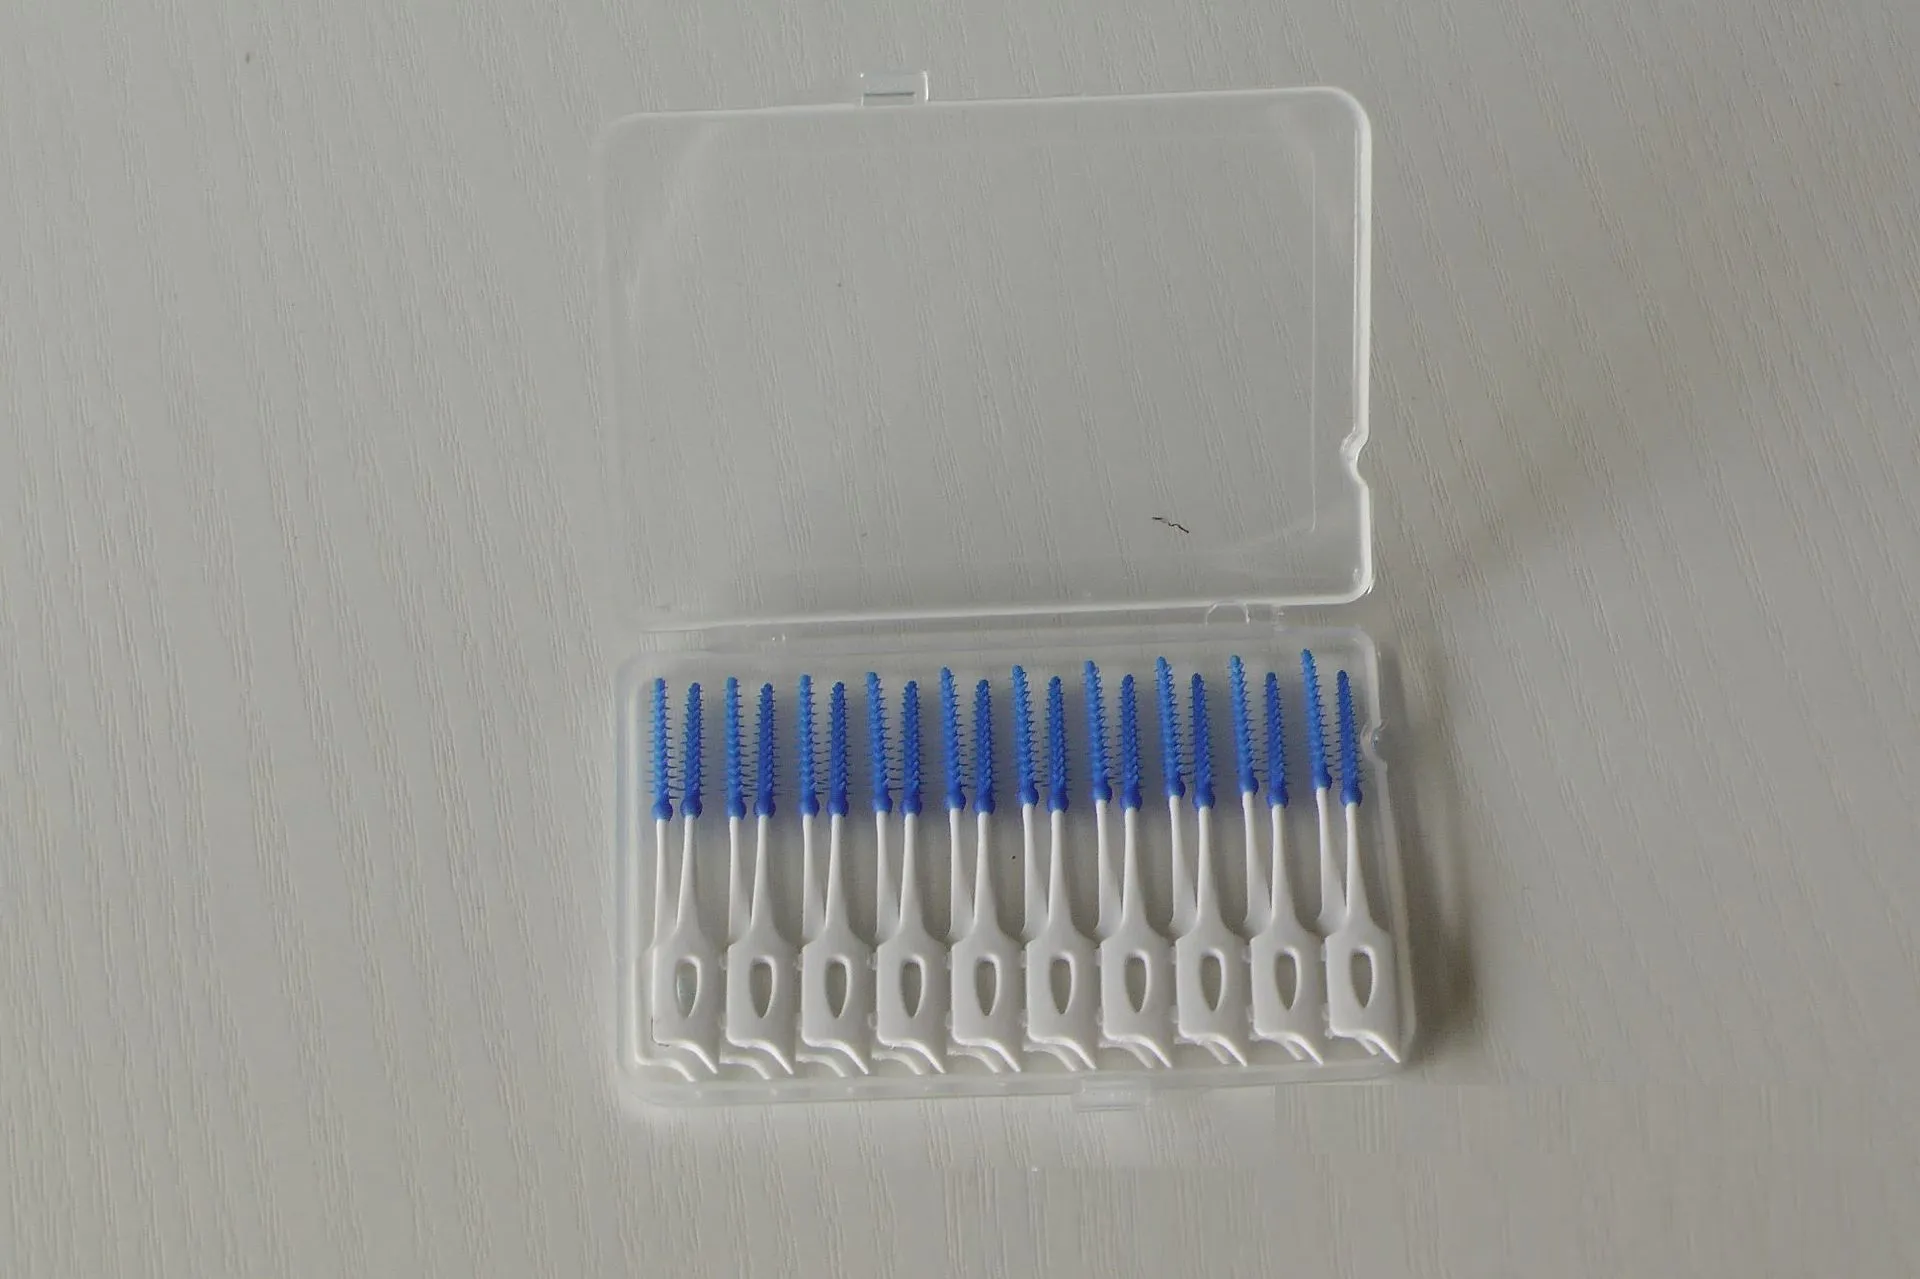 Boîte en plastique en plastique de brosse à dents Boîte en plastique pour brossage des dents dans des dents de massage élastique